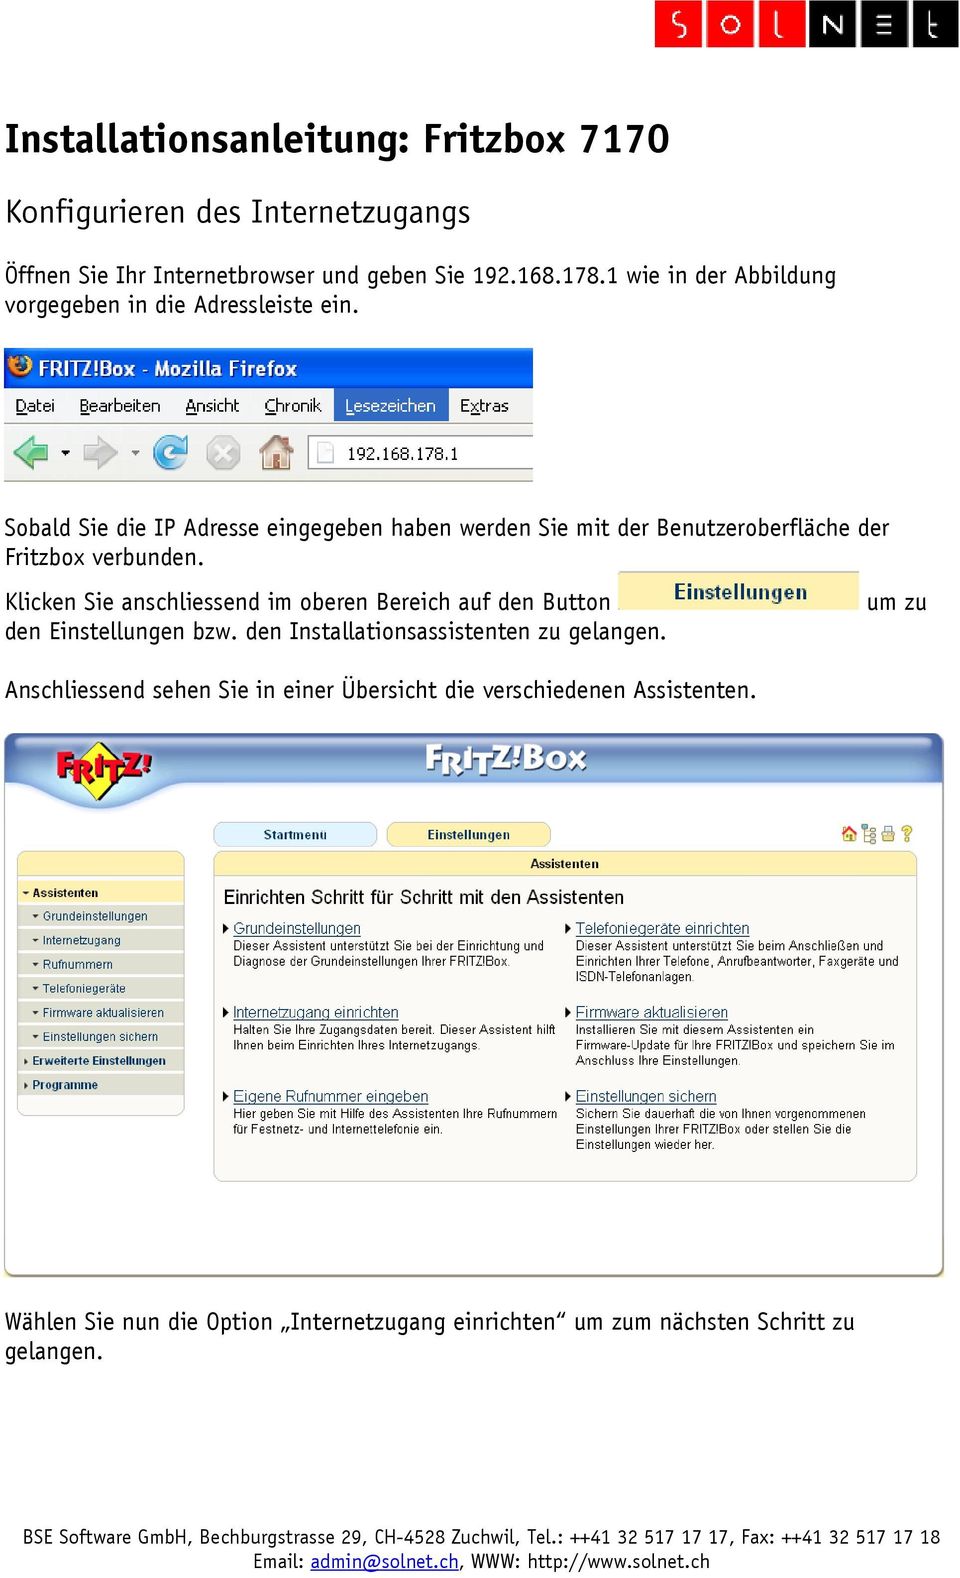 Sobald Sie die IP Adresse eingegeben haben werden Sie mit der Benutzeroberfläche der Fritzbox verbunden.